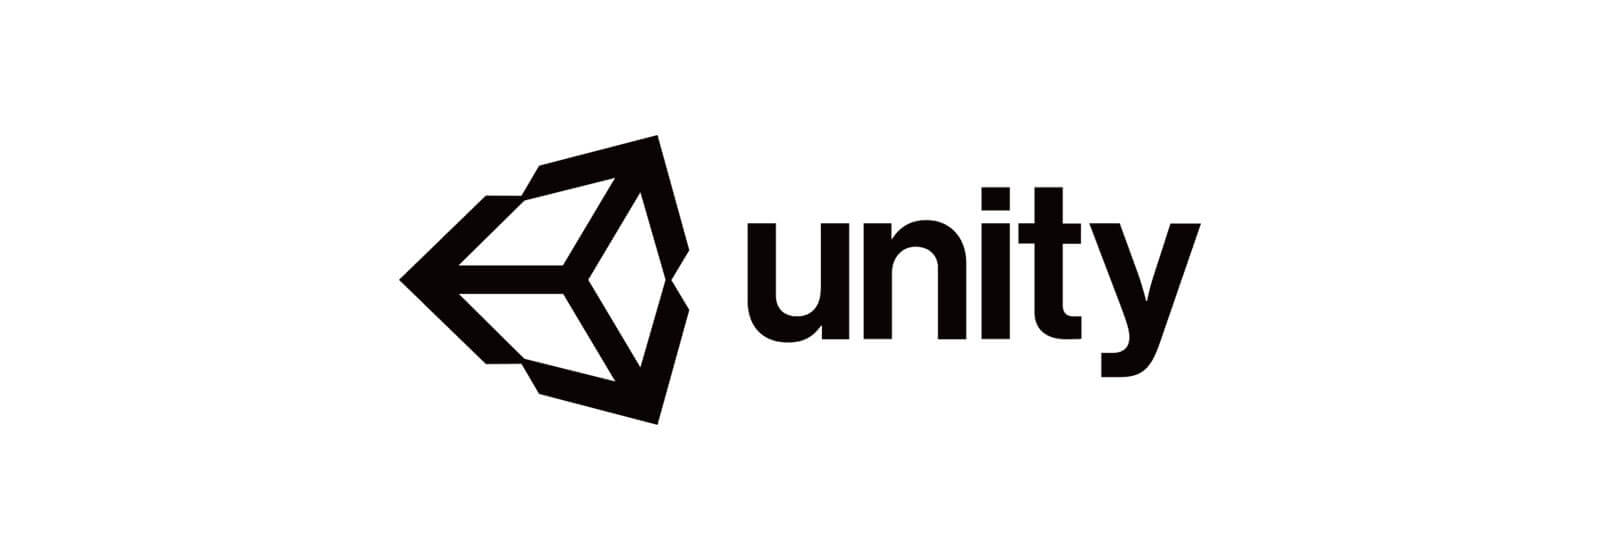 Curso de Unity para jogos 3D (Grátis Unity 2D) - Dsigner Treinamentos